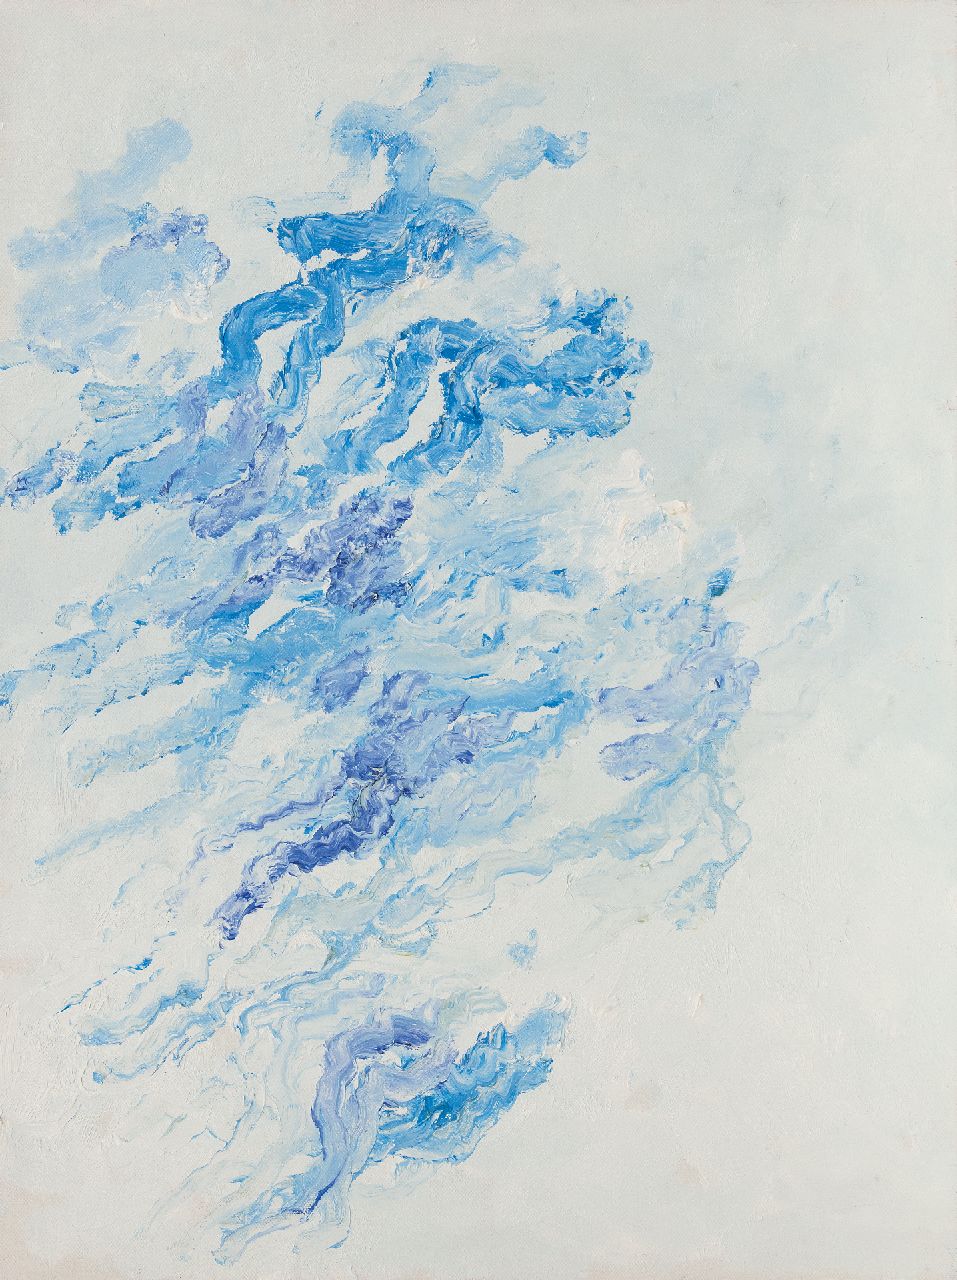 Armando   | Armando | Schilderijen te koop aangeboden | Blau (Blauw), olieverf op doek 79,9 x 60,0 cm, gesigneerd verso en verso gedateerd 12-9-11